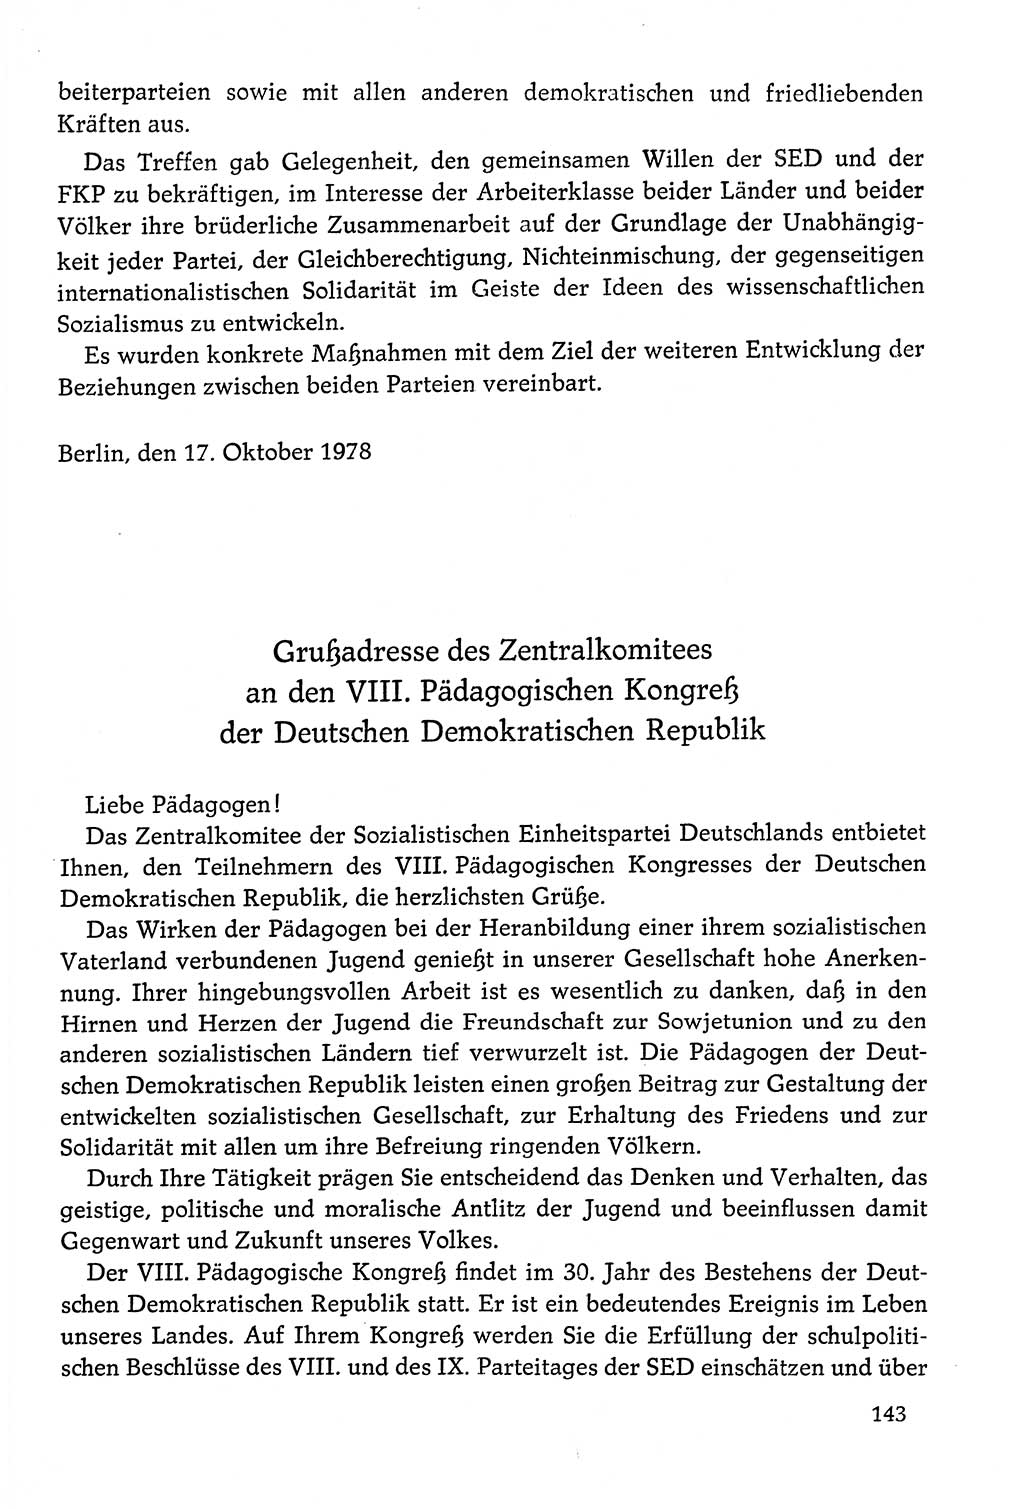 Dokumente der Sozialistischen Einheitspartei Deutschlands (SED) [Deutsche Demokratische Republik (DDR)] 1978-1979, Seite 143 (Dok. SED DDR 1978-1979, S. 143)